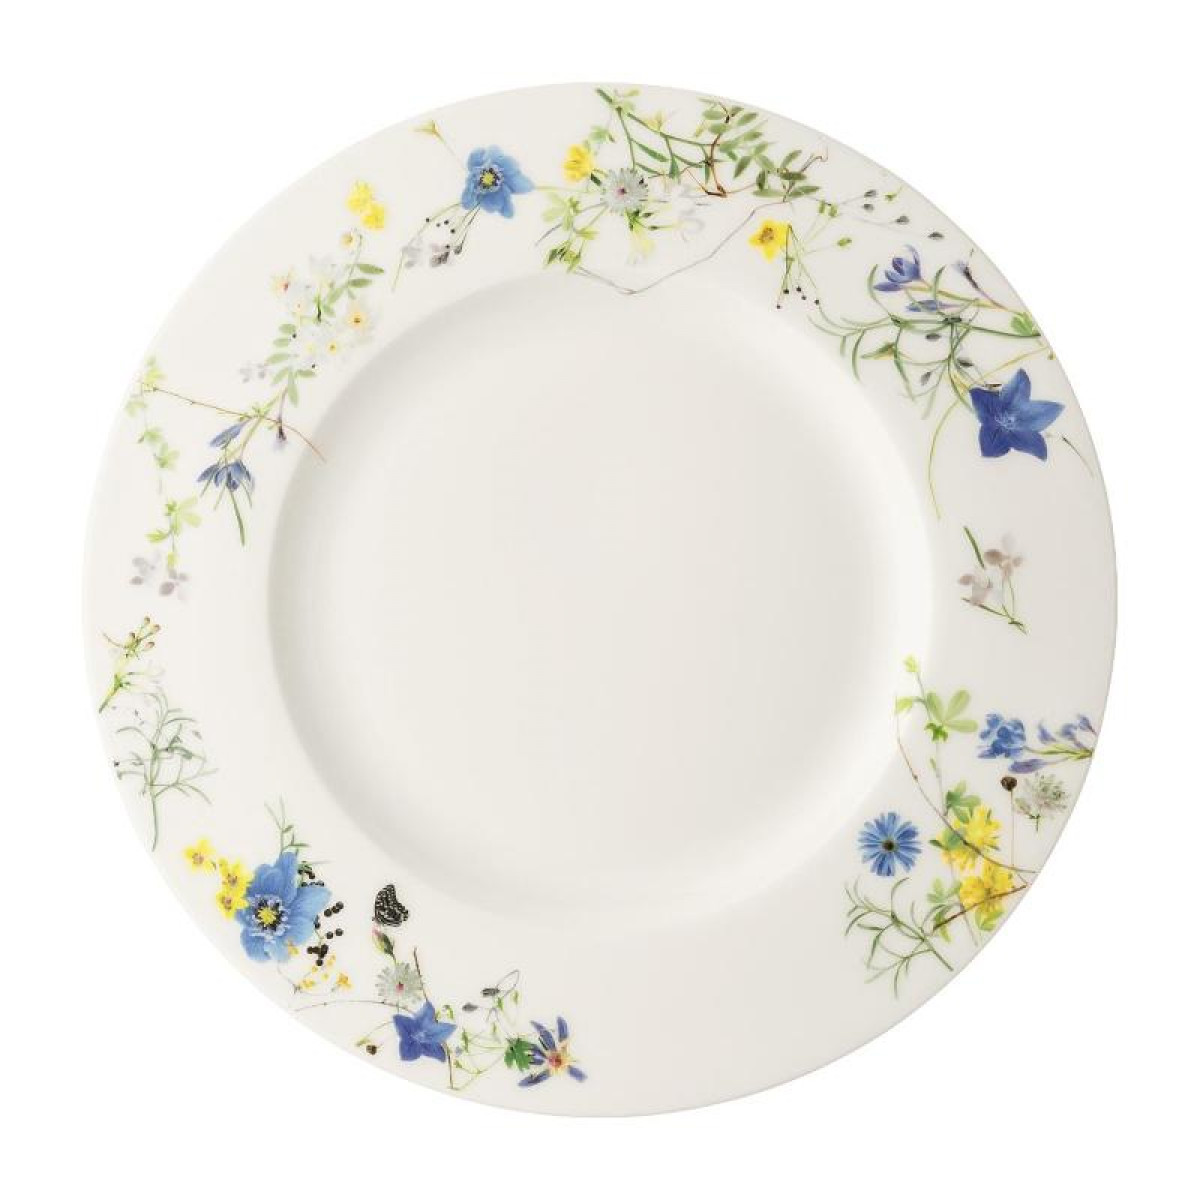 Тарелка закусочная с бортом Rosenthal Альпийские цветы 23 см тарелка закусочная альпийские цветы 21 см rt10530 405108 10221 rosenthal